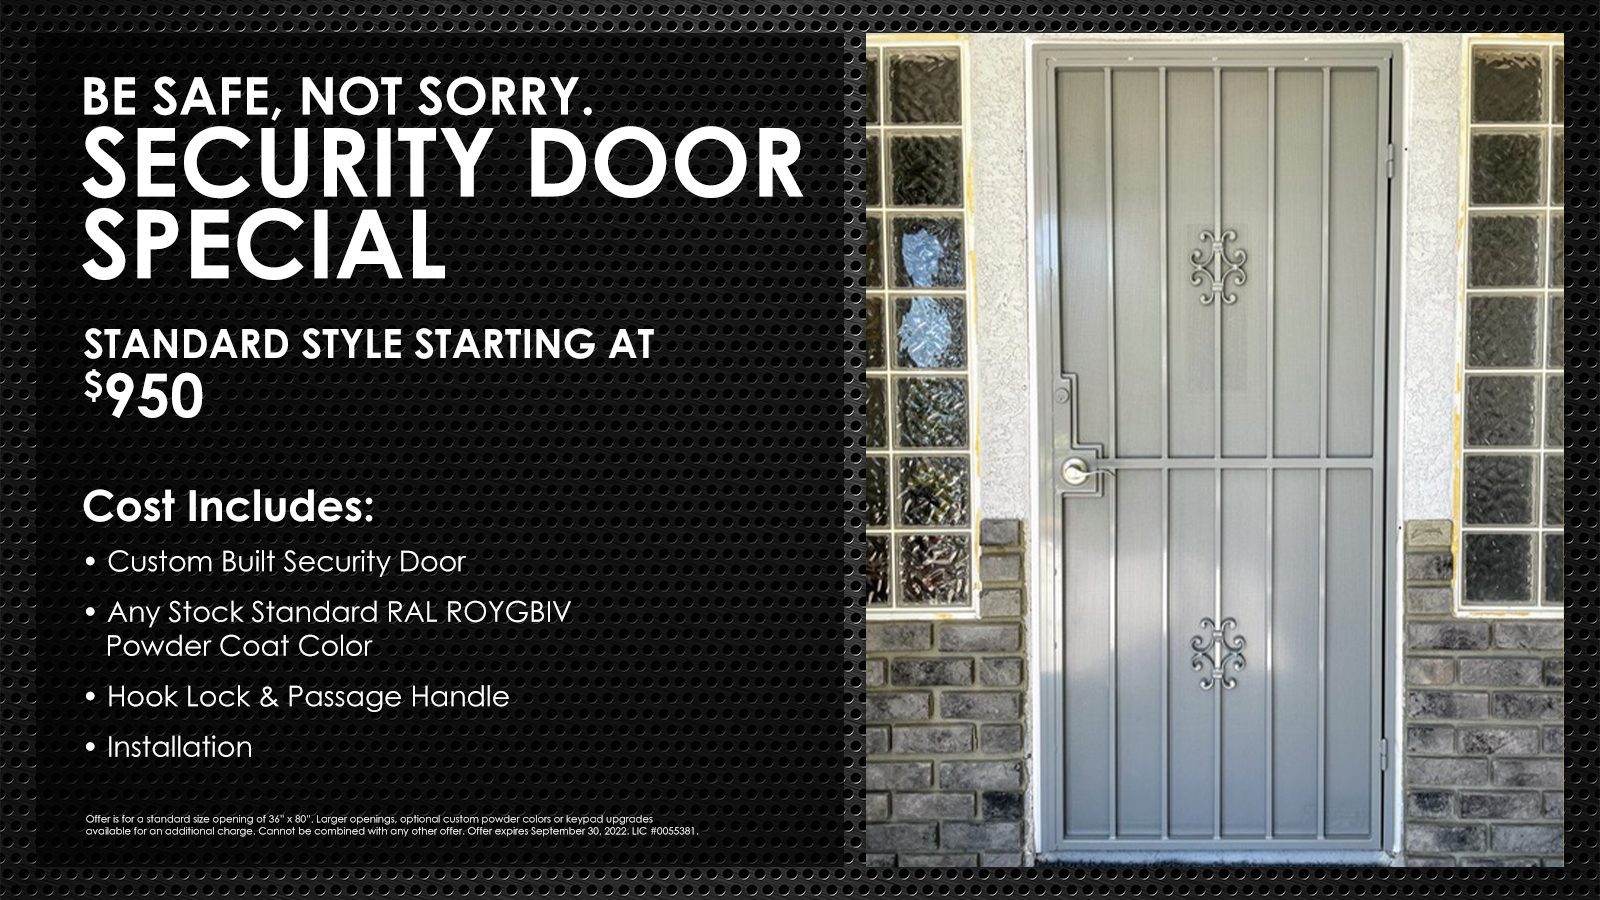 ar iron security door special offer in las vegas